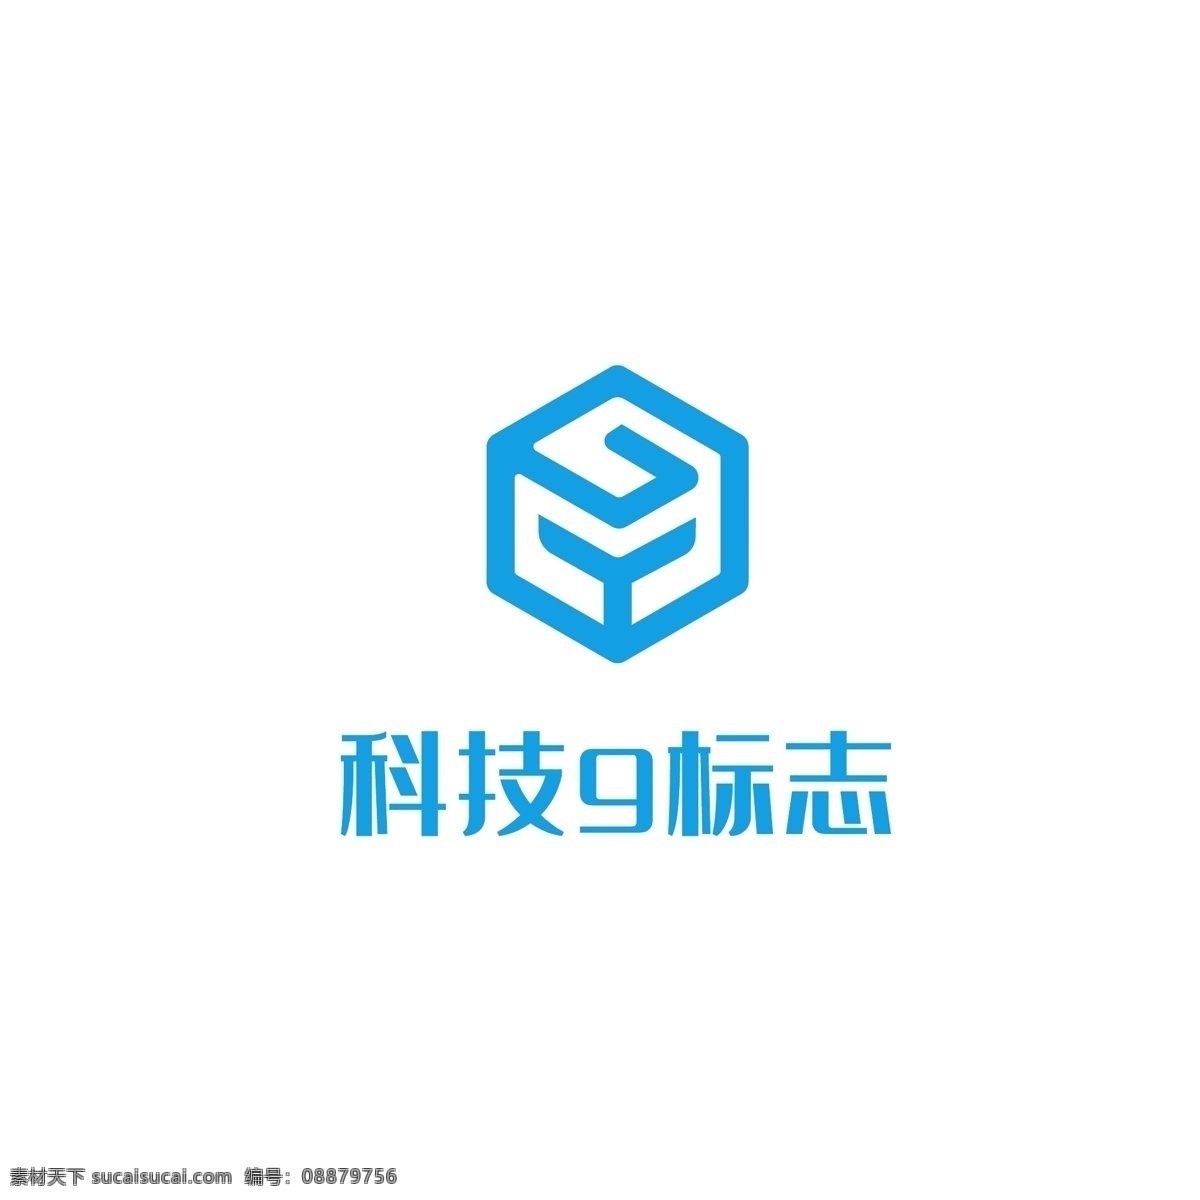 金融 科技 logo 现代 标志logo 企业logo 商业logo 科技logo logo设计